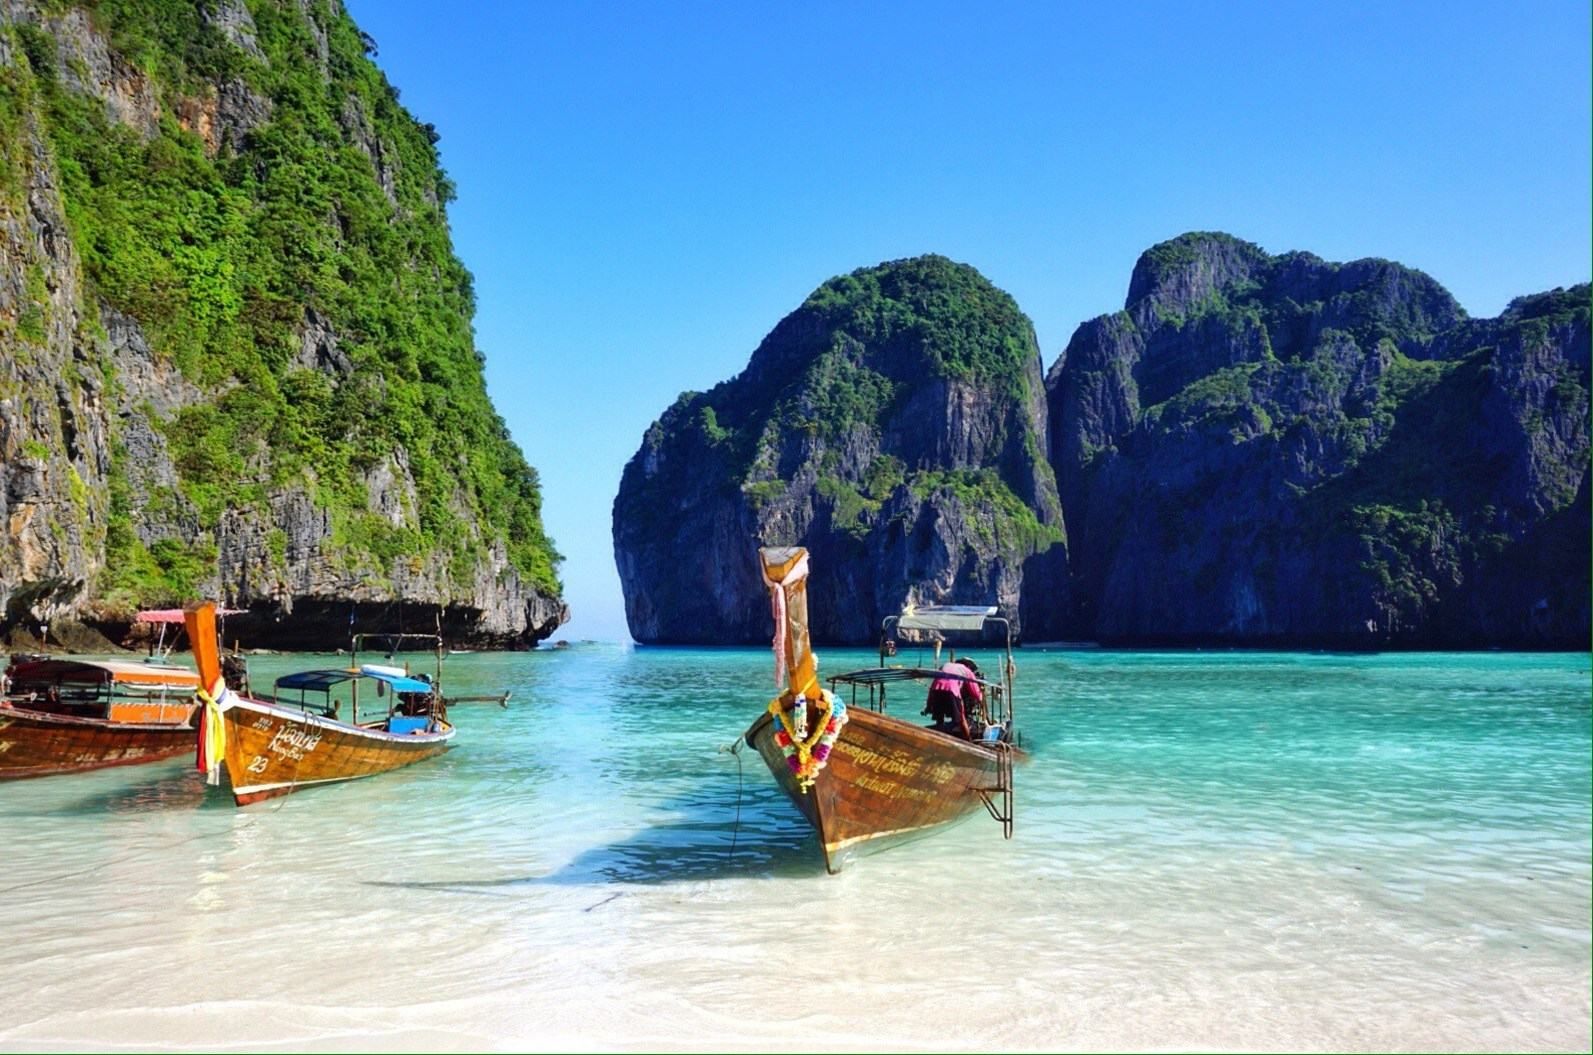 Райський пляж в Таїланді закриють через голлівудського актора